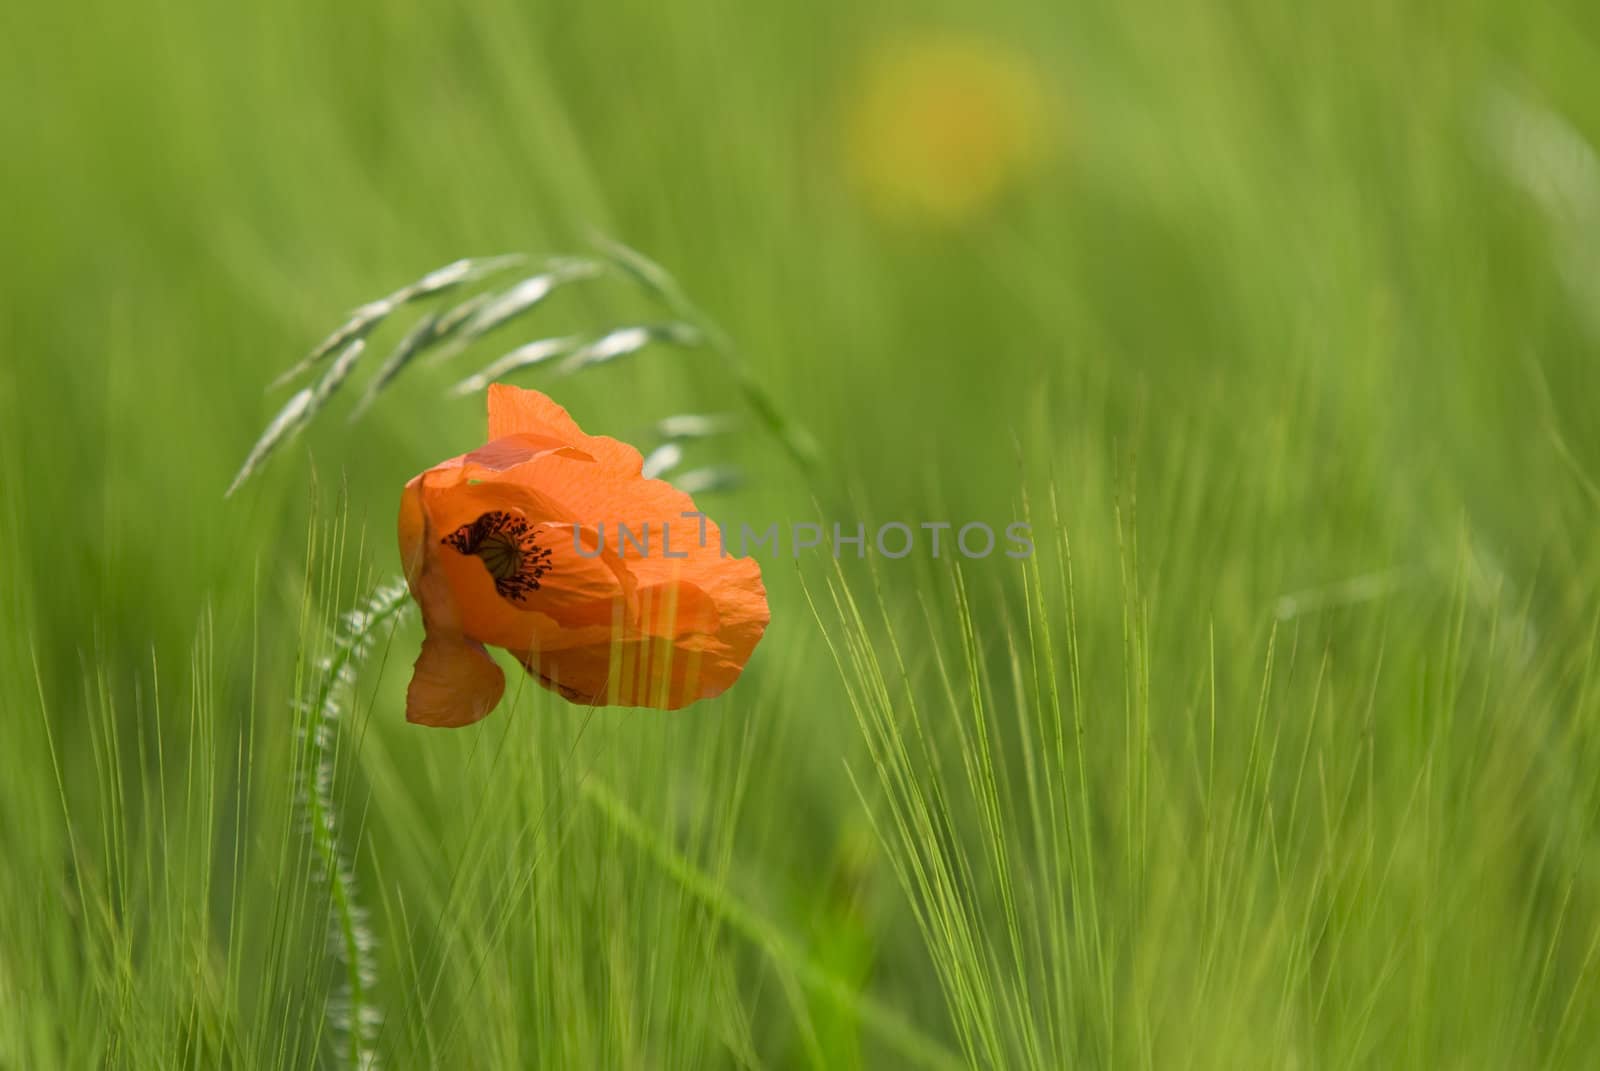 one poppy in a meadow